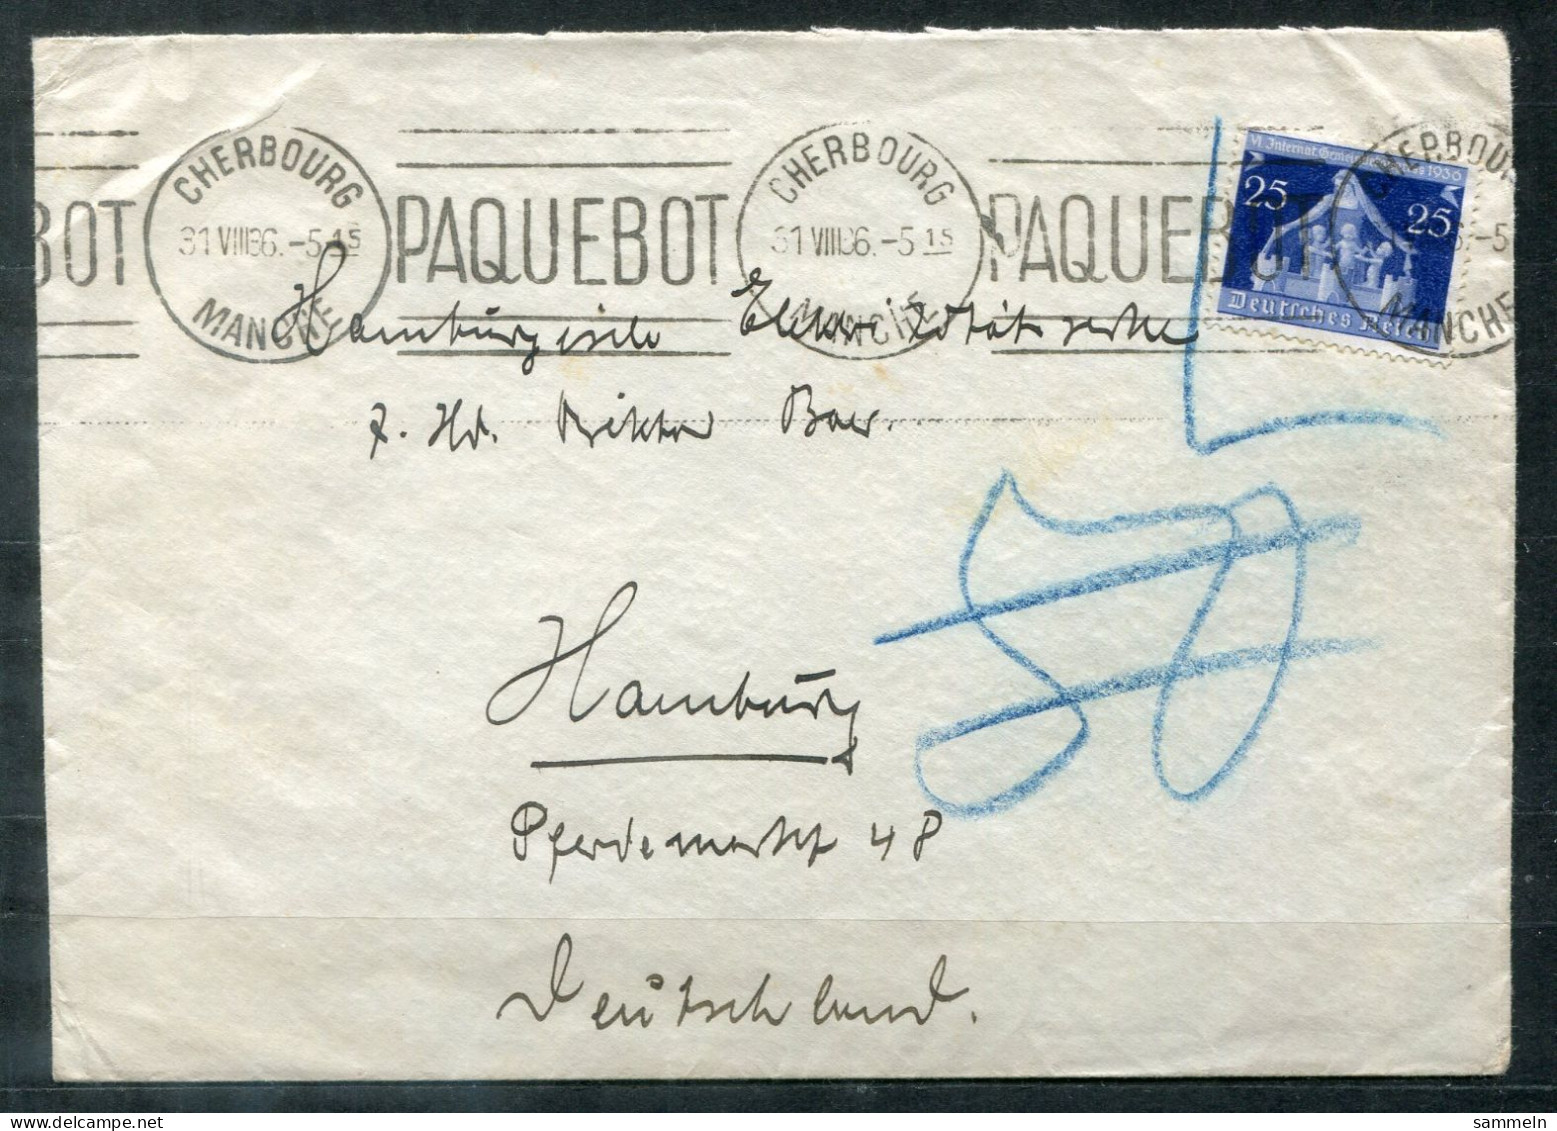 FRANKREICH - Schiffspost, Navire, Ship Letter, Maschinenstempel PAQUEBOT Und CHERBOURG 31.8.1936 Auf NDL-Umschlag - Briefe U. Dokumente